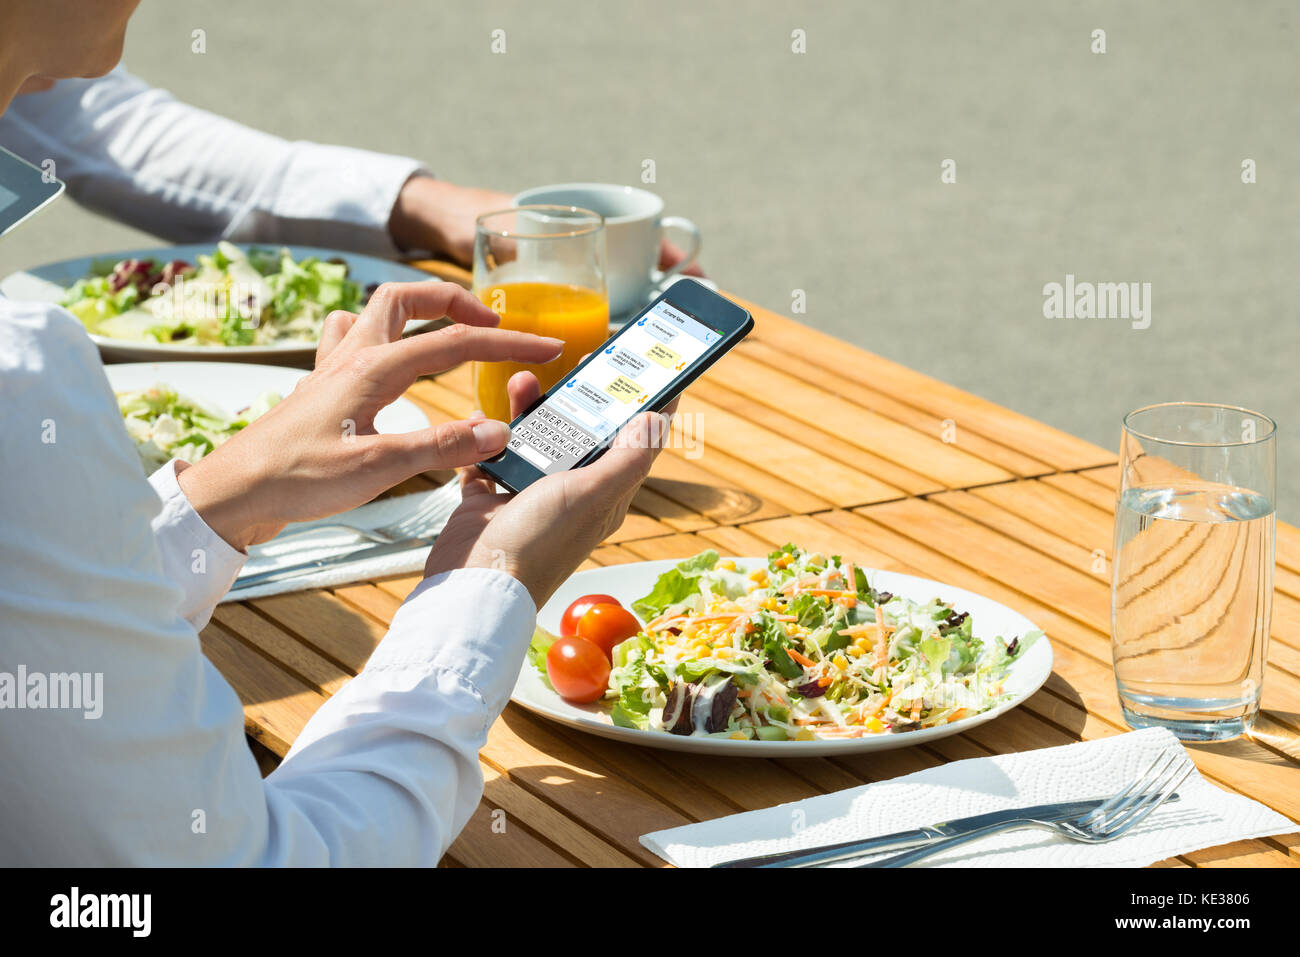 Personne chat sur téléphone mobile avec la nourriture et verre de jus sur la table Banque D'Images